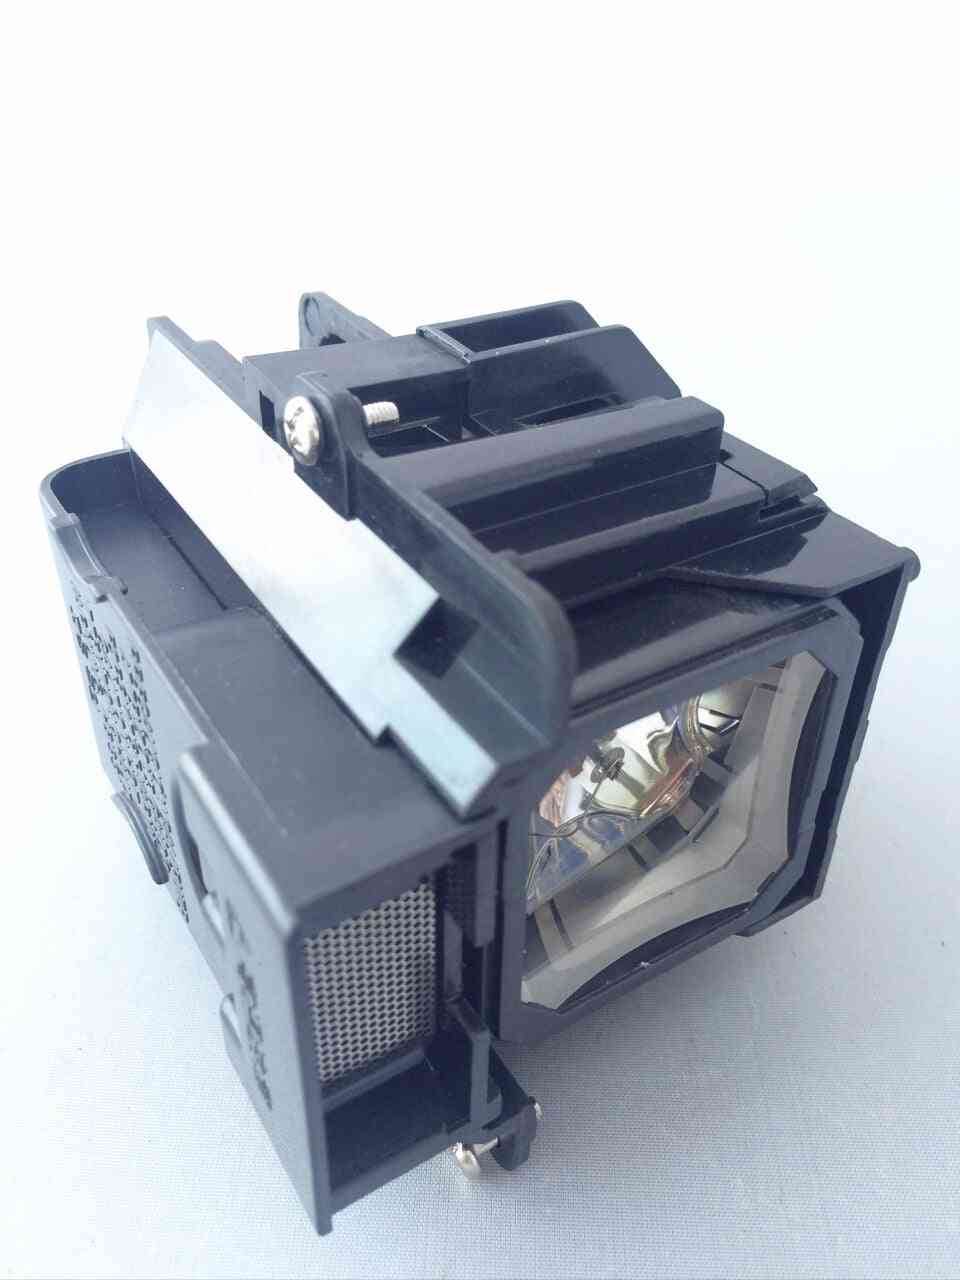 Vt75lp Projector Lamp